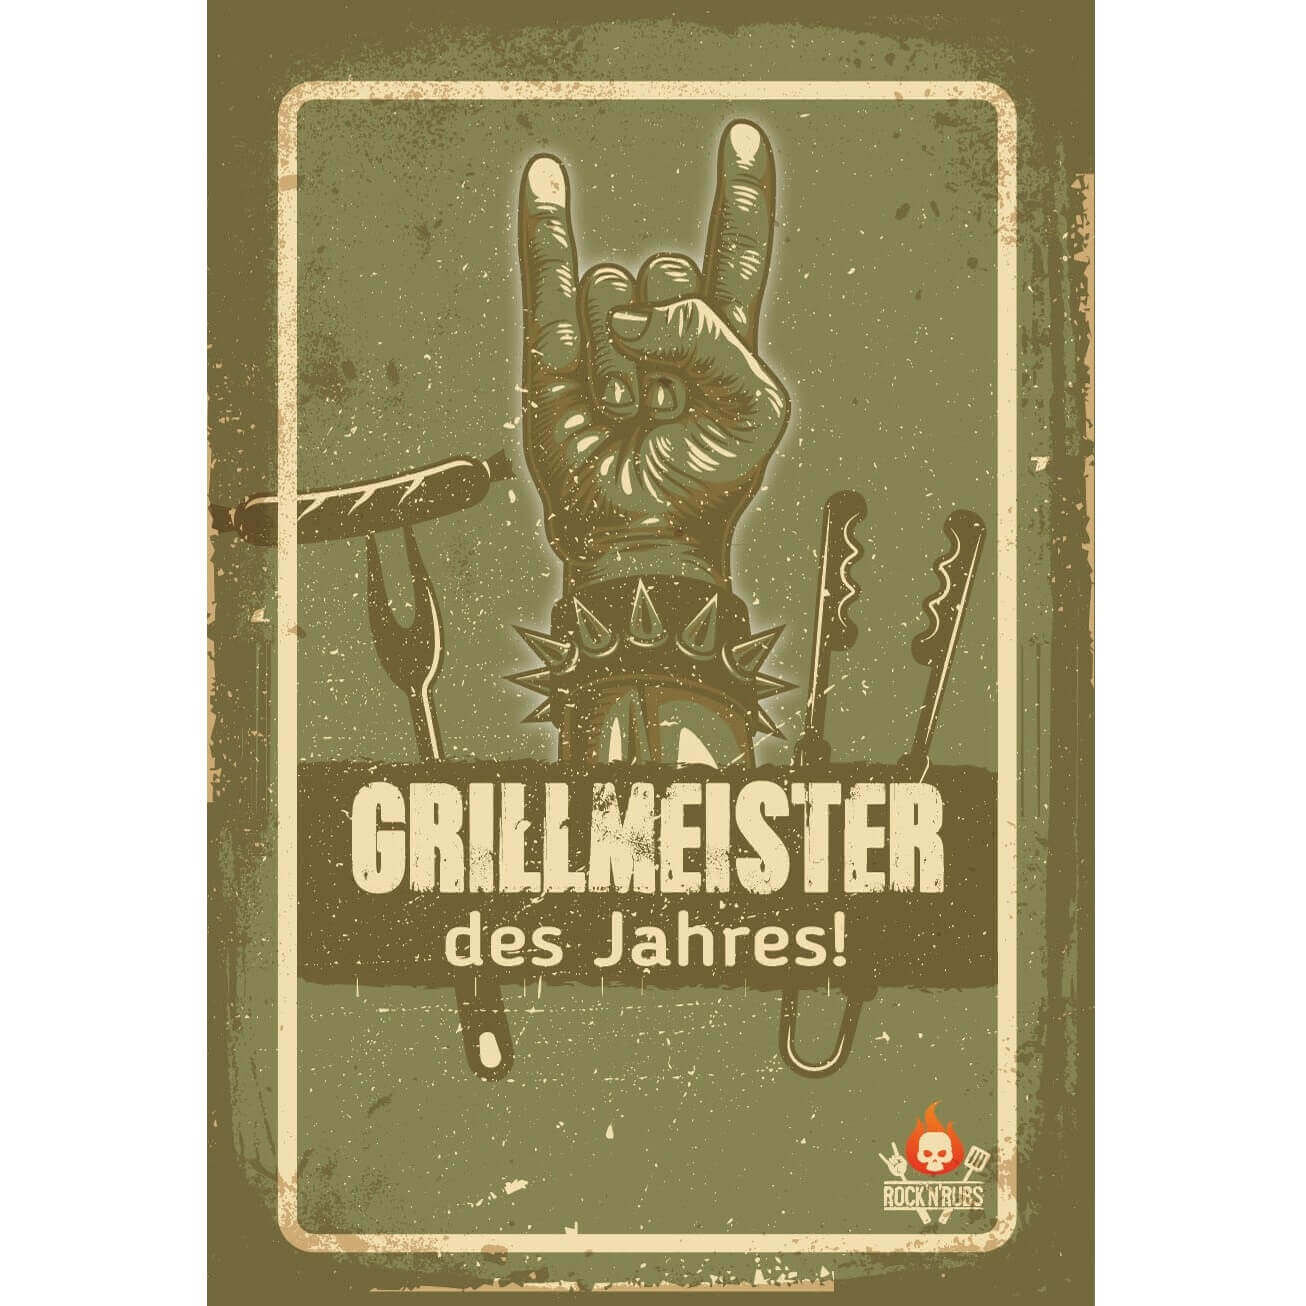 Rock'n'Rub Schild "Grillmeister des Jahres" 100033